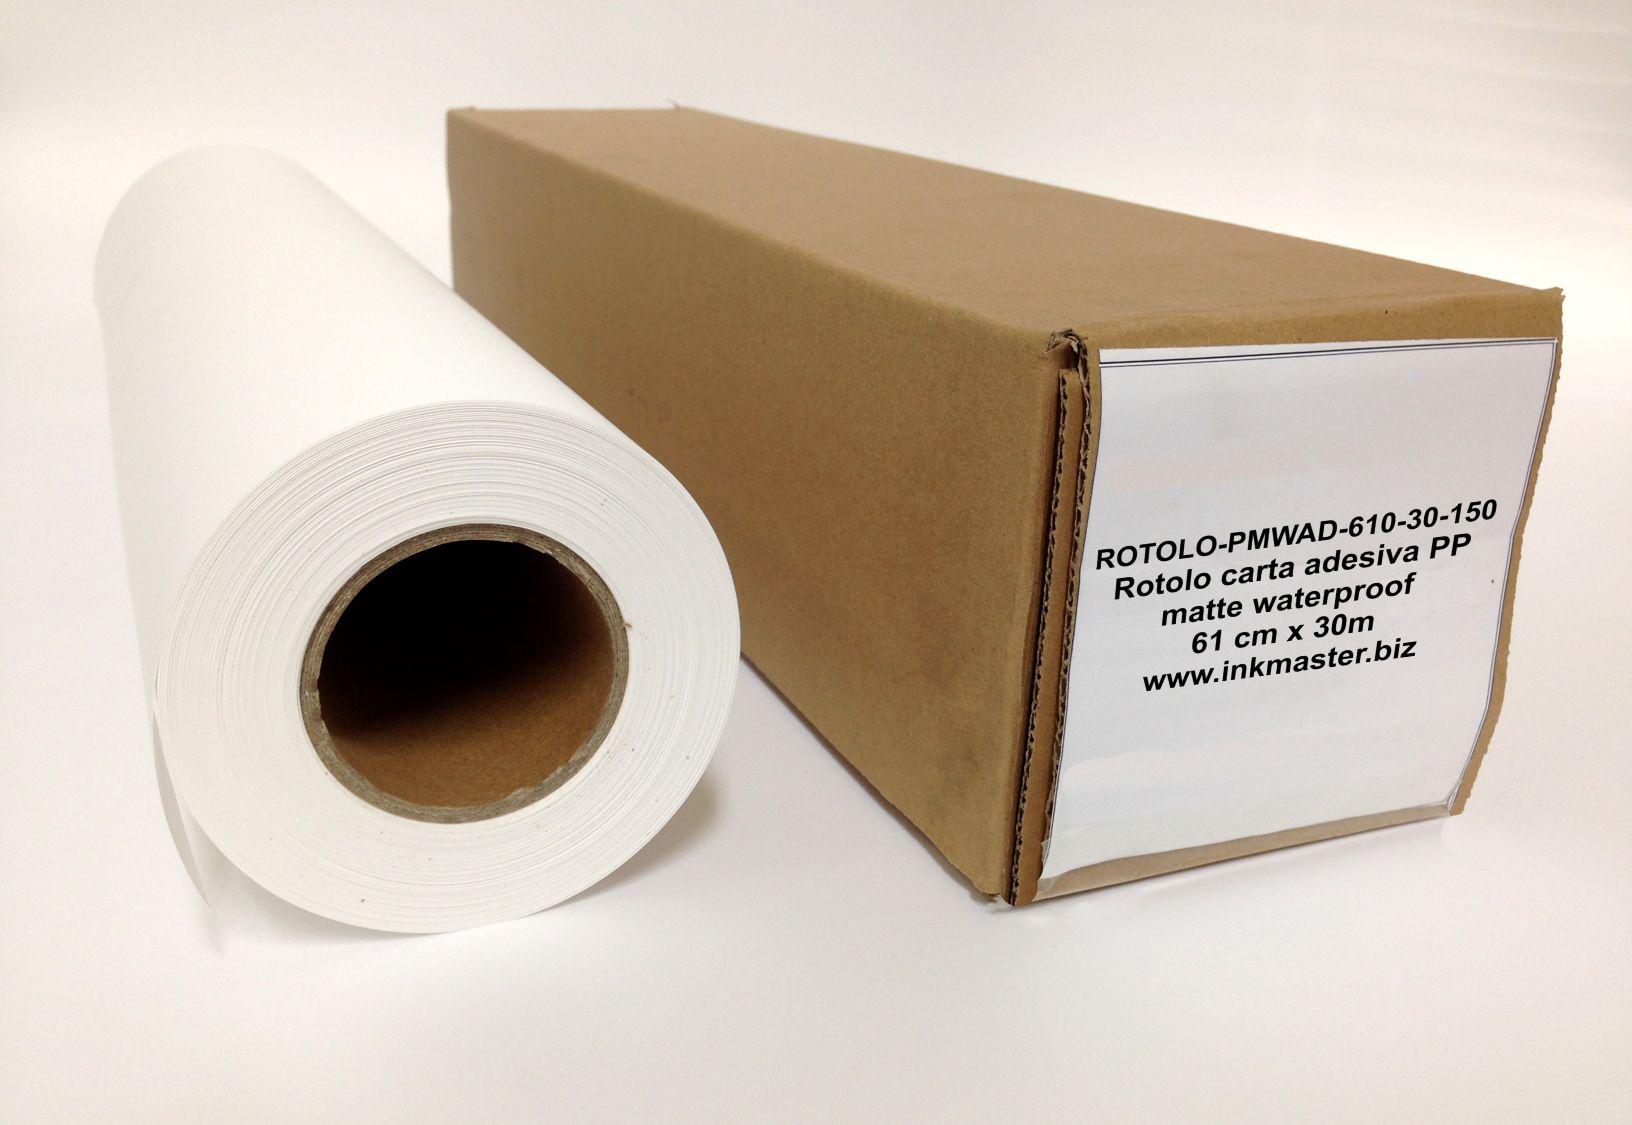 Rotolo carta adesiva PP matte waterproof. DYE, PIGMENTI. 610mm X 30m. 150g/m2.